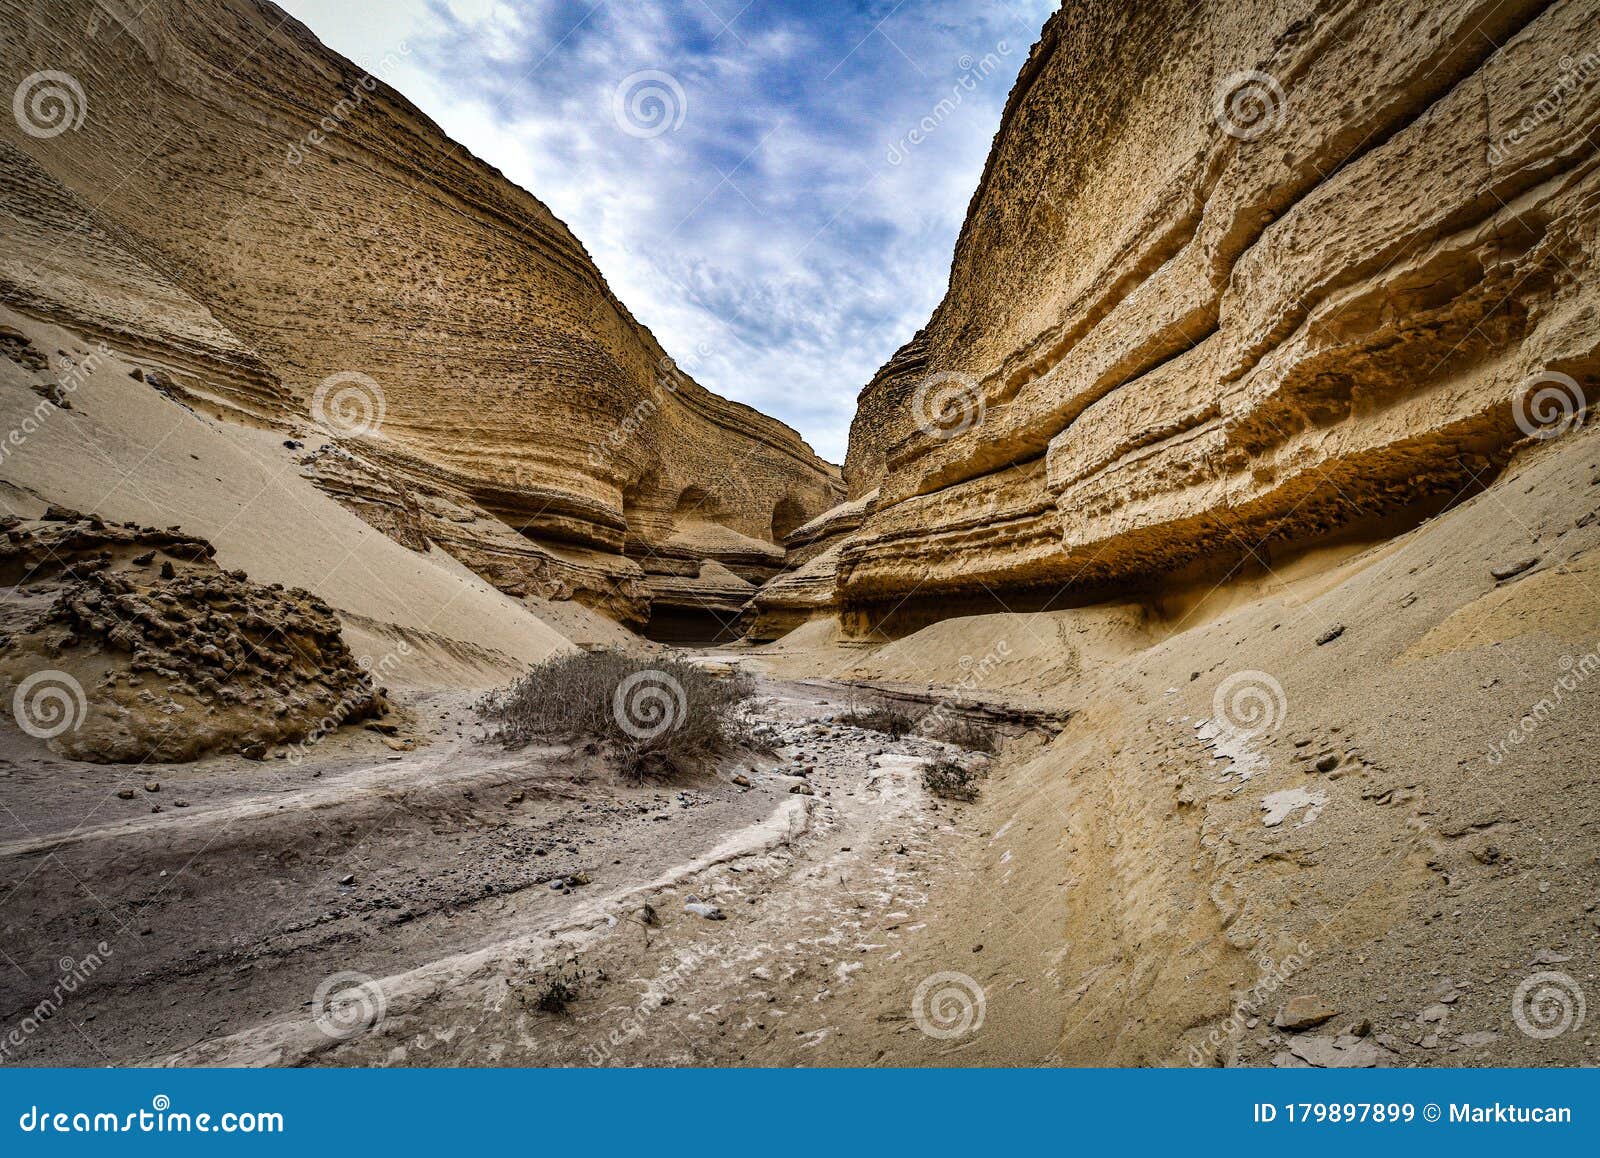 rock formations in the canyon de los perdidos. nazca desert, ica, peru